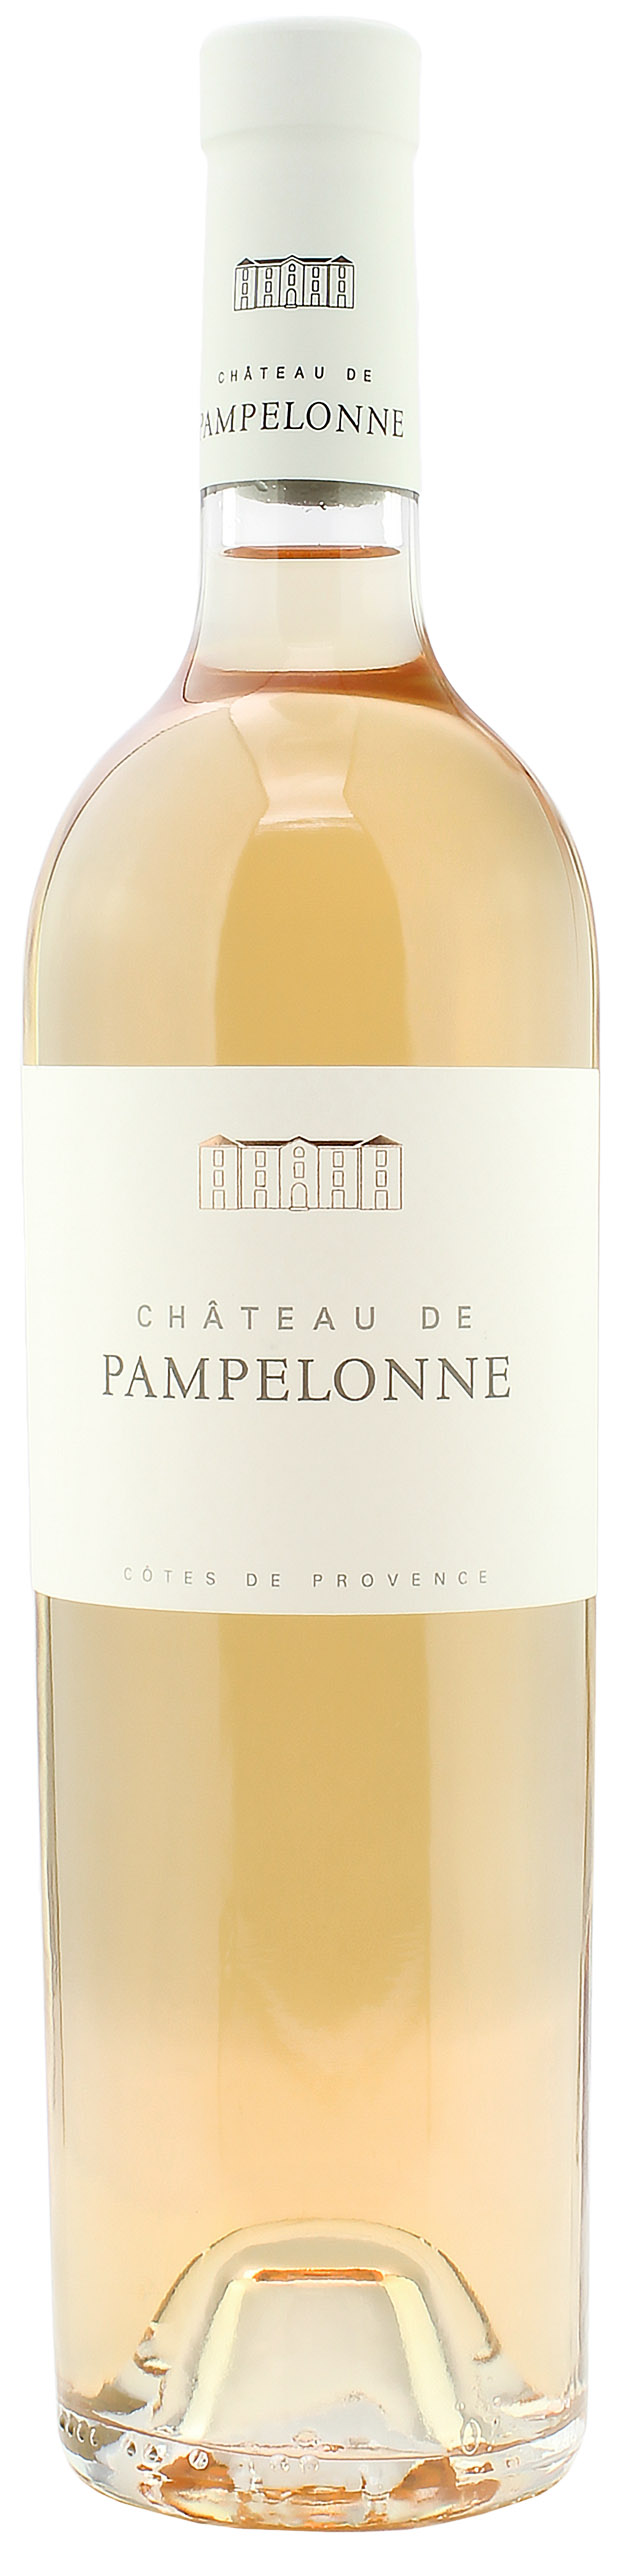 Château De Pampelonne Cotes de Provence 2020 13.0% 0,75l